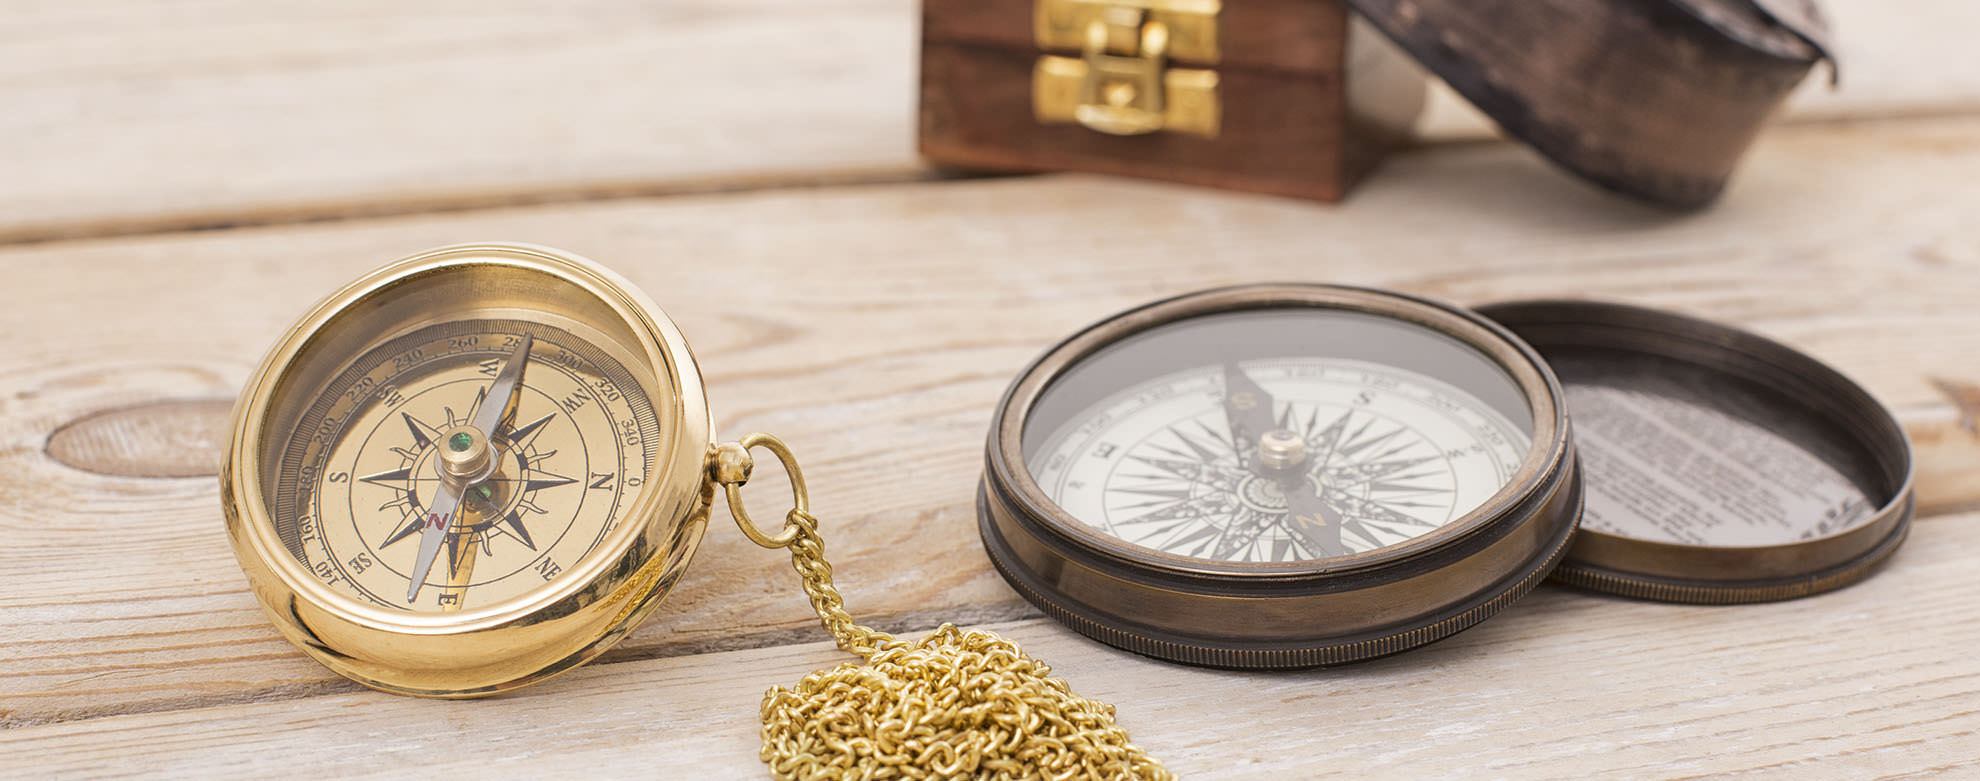 Army Military Design Navigation Kompass mit Sonnenuhr Uhr im alten Stil Geschenk 